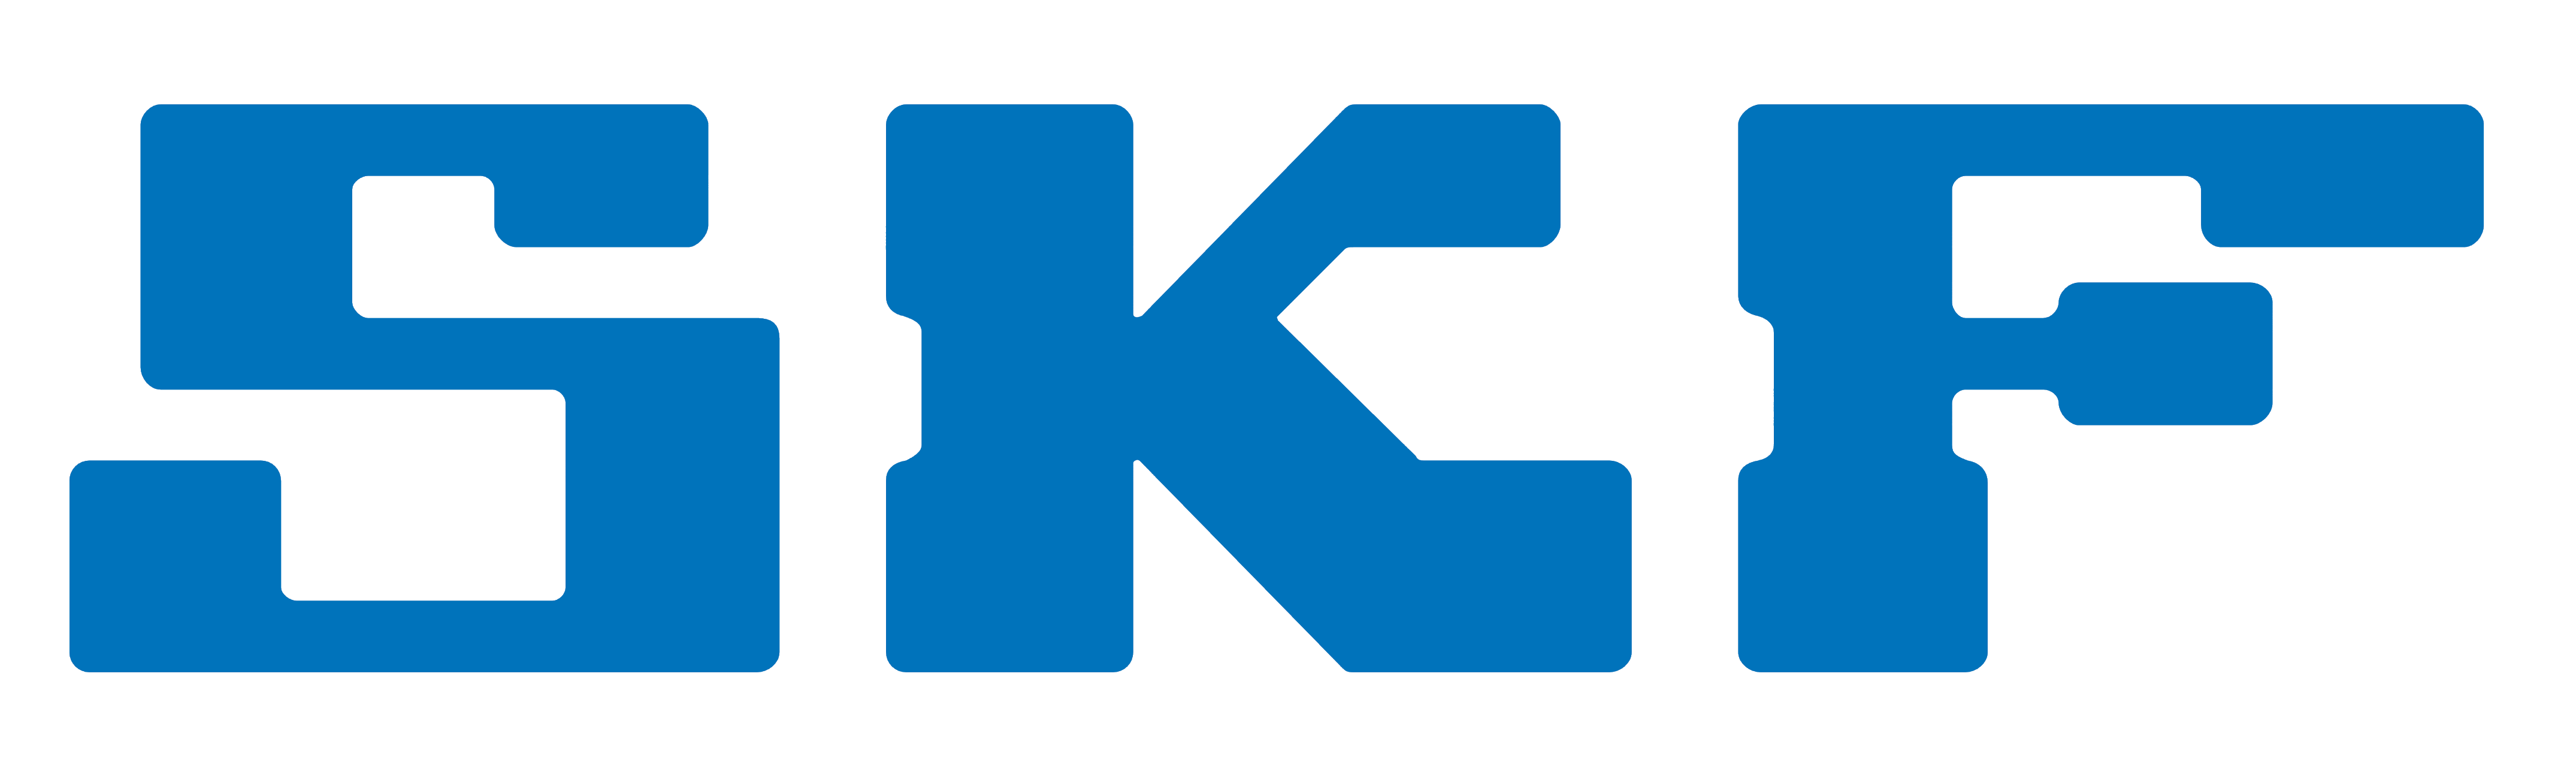 SKF logo, logotype